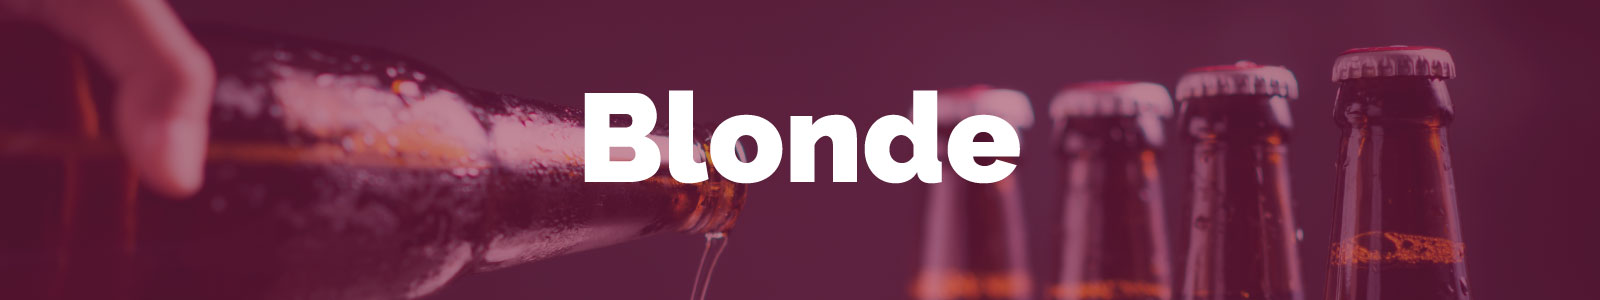 bannière bière blonde